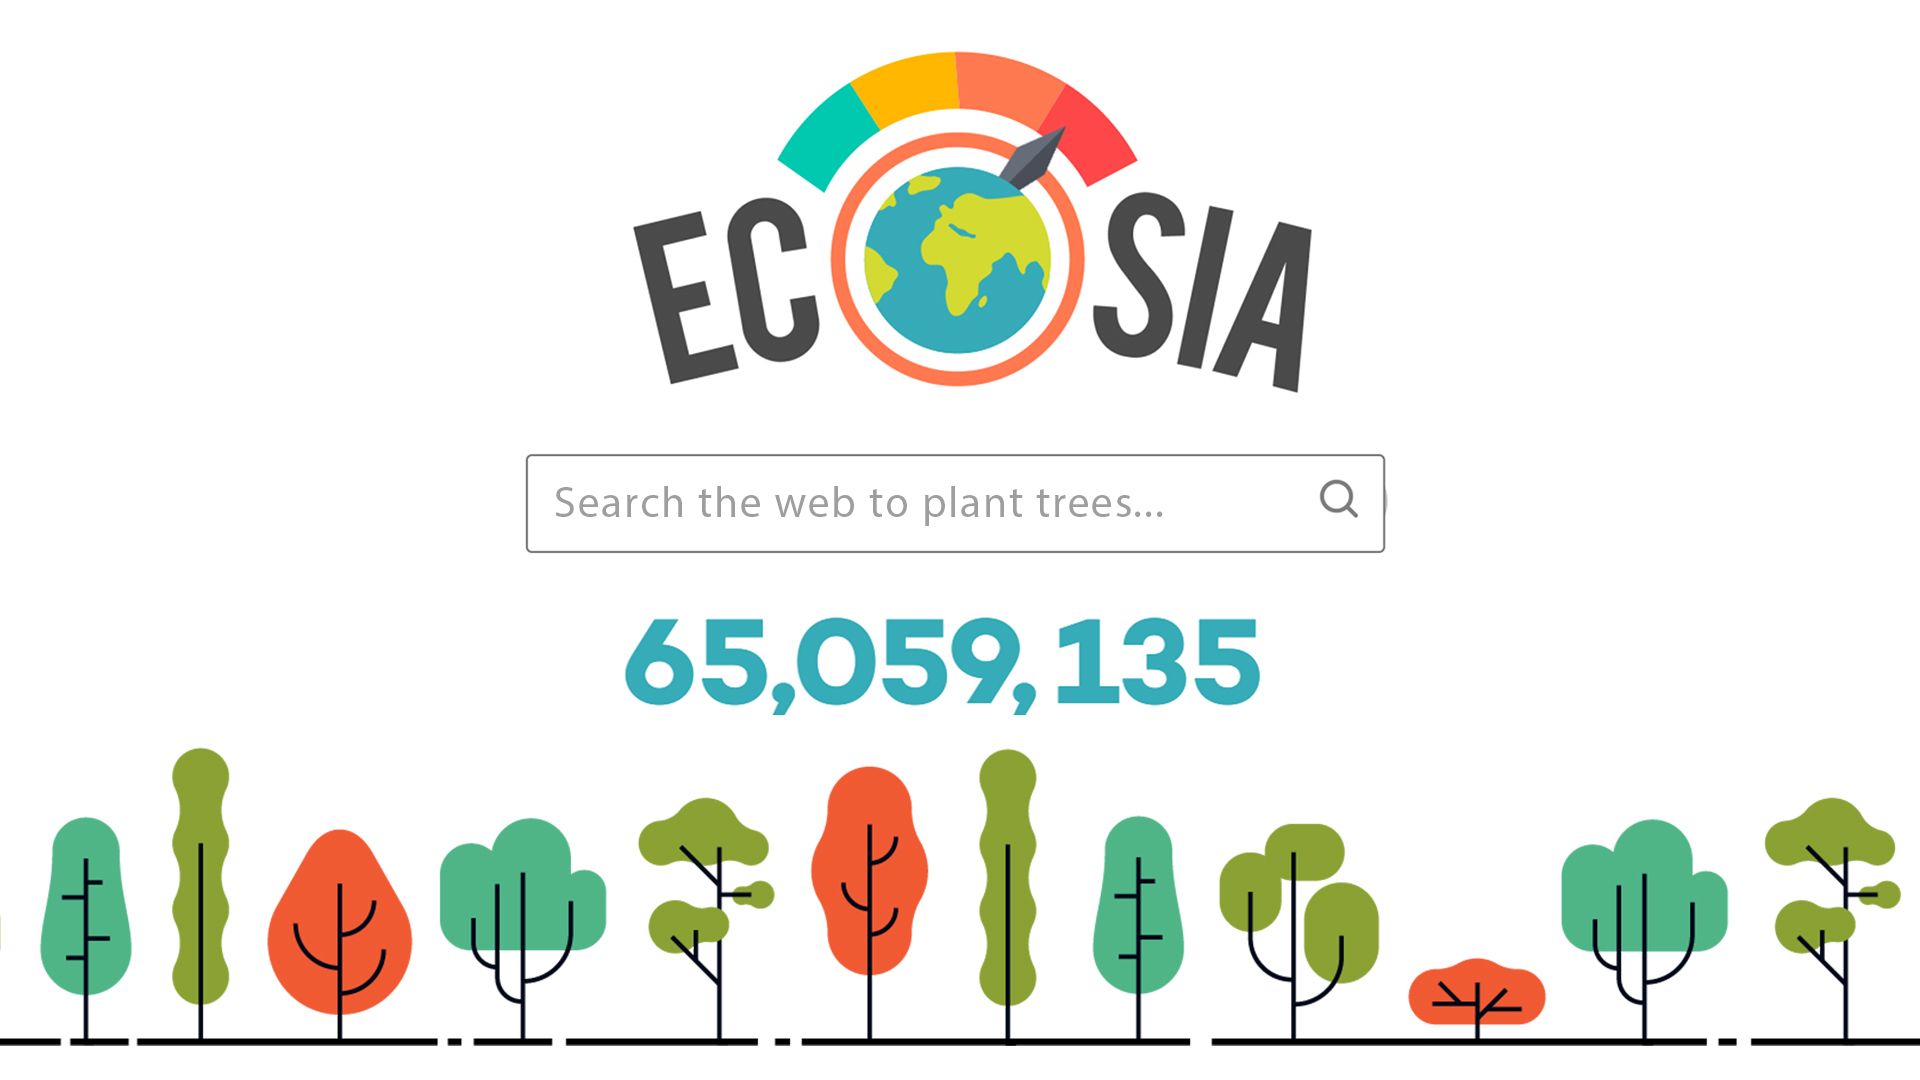 "Den grønne søkemotoren Ecosia lanserer sin egen nettleser